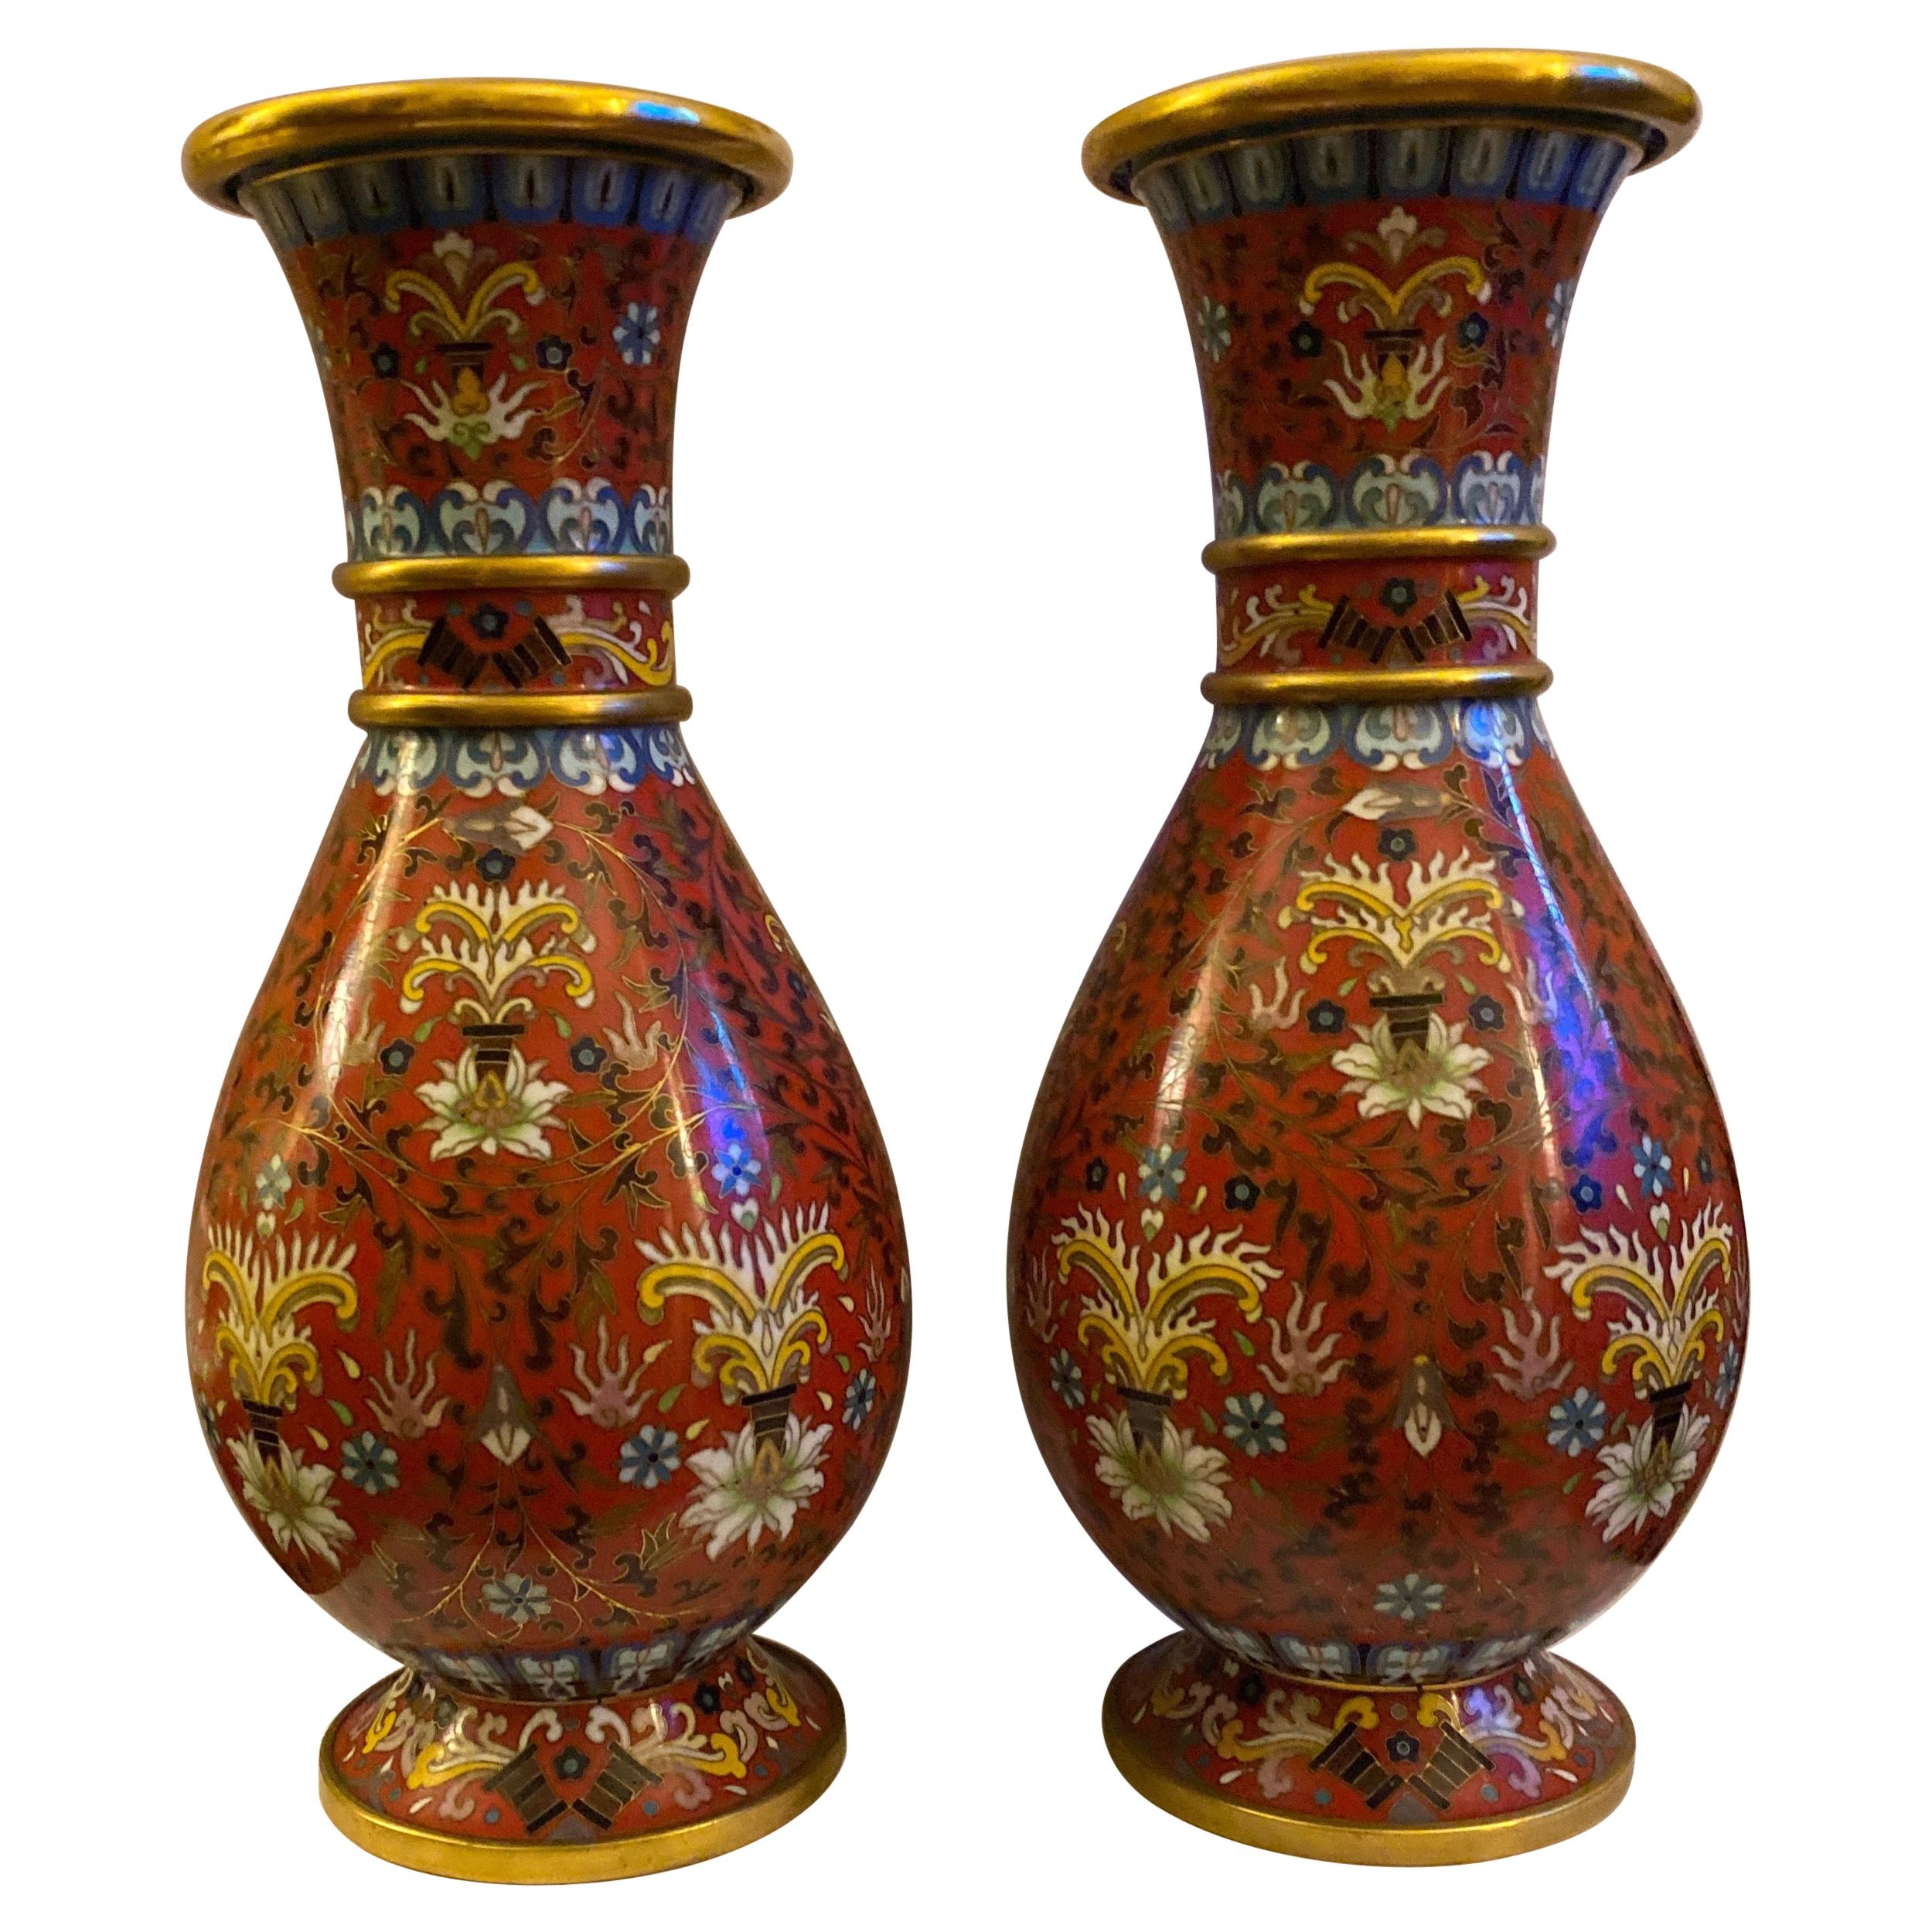 Paar vergoldete Vasen mit Cloisonné-Emaille